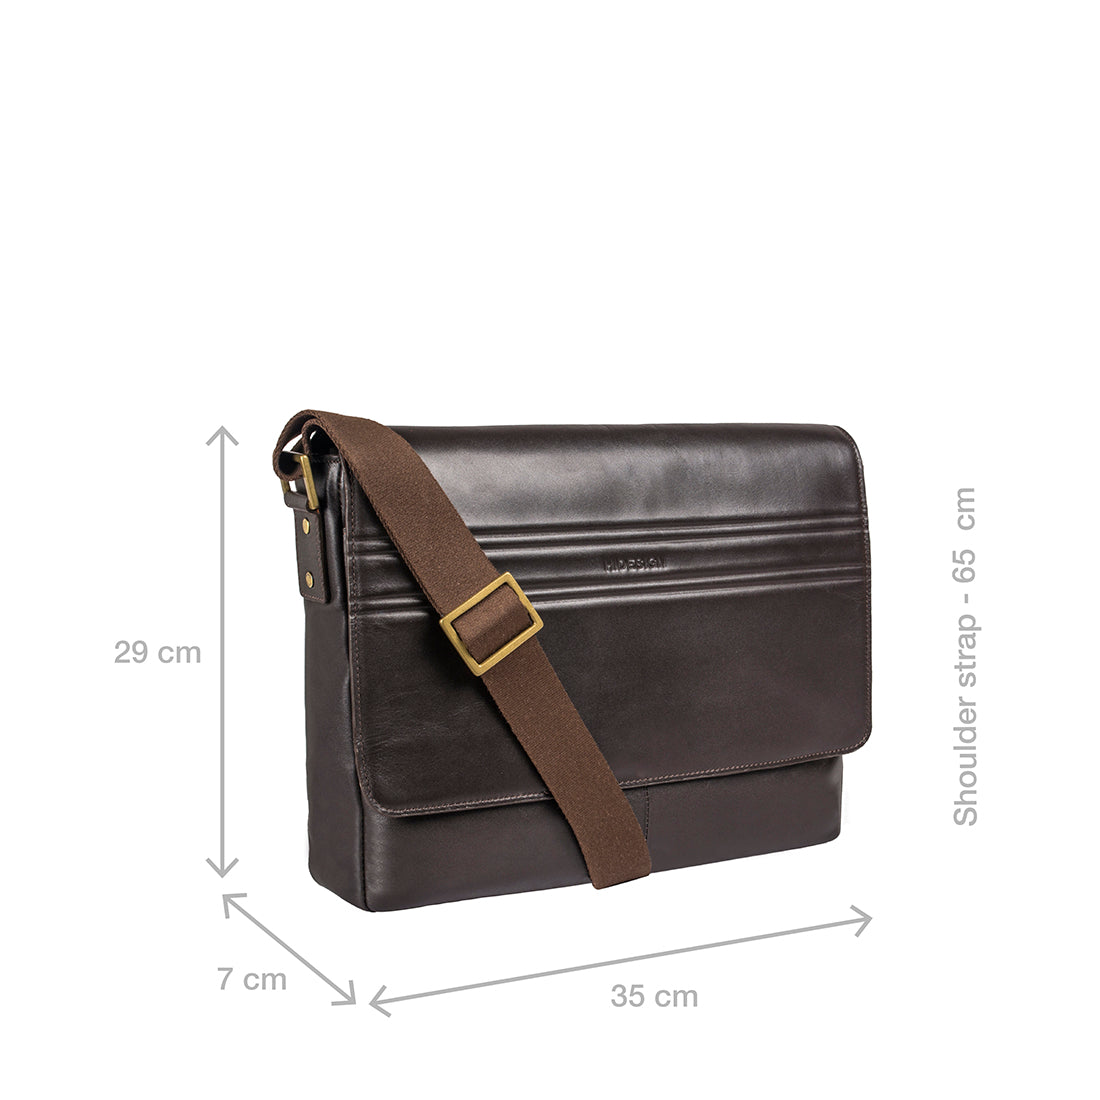 Buy Green Ee Zoey Mini Bag Online - Hidesign